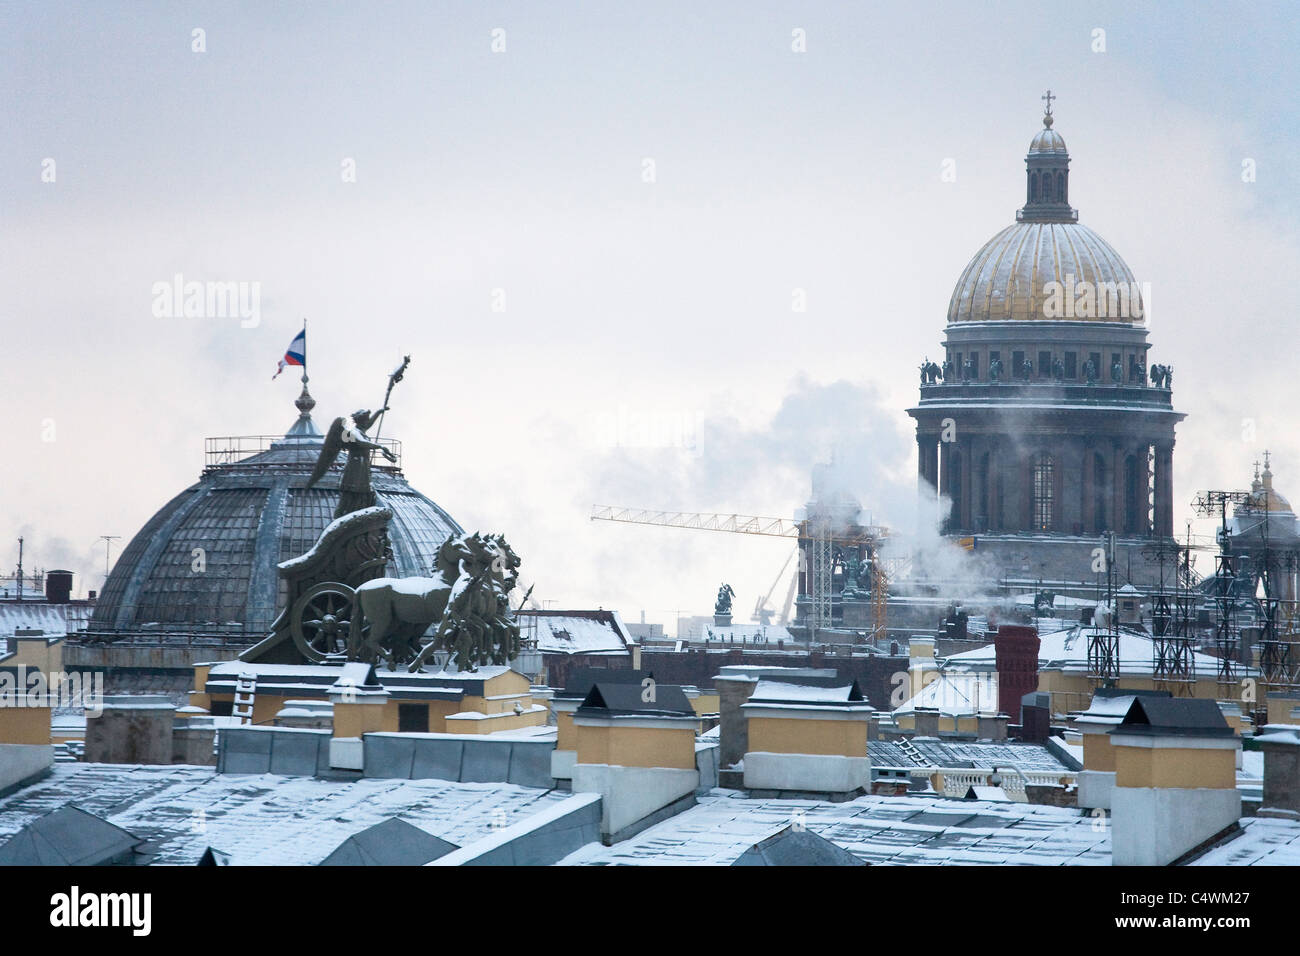 La Cathédrale St Isaac à travers les toits, les chevaux et le char-major général 'bâtiment' Saint Petersburg Russie Banque D'Images